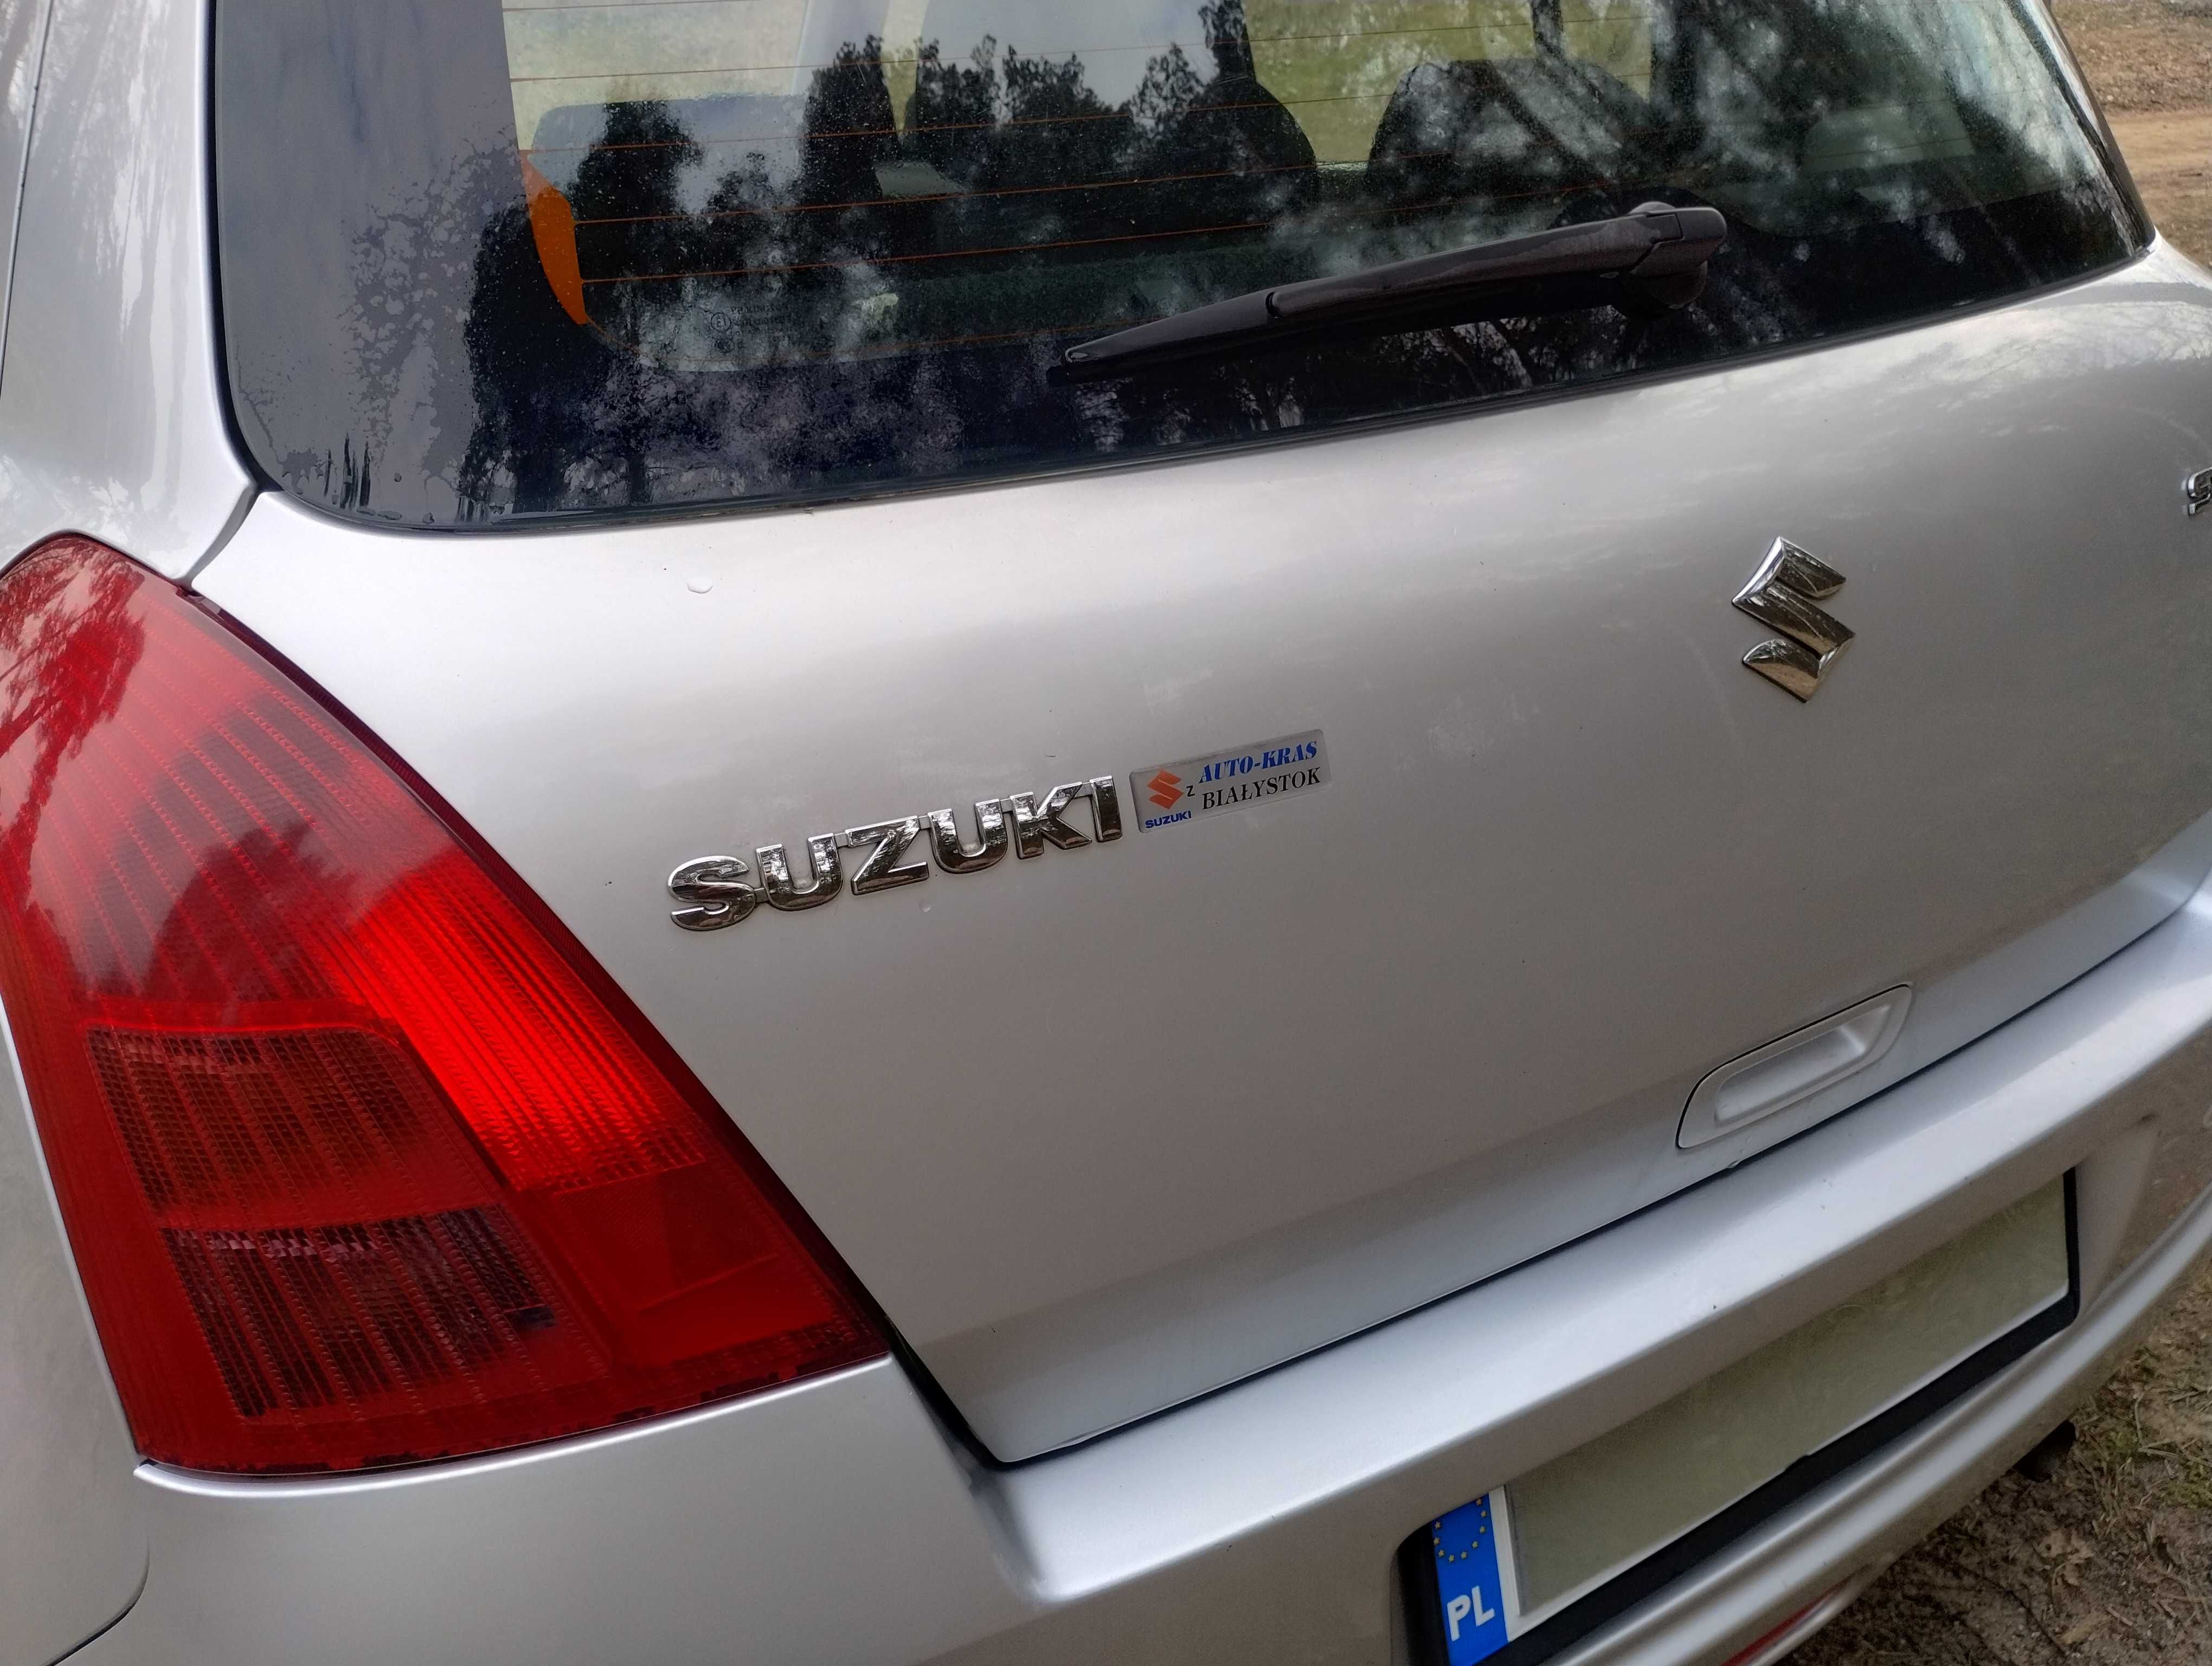 Suzuki Swift 1,3 benzyna przebieg 174.000 km. możliwość zamiany